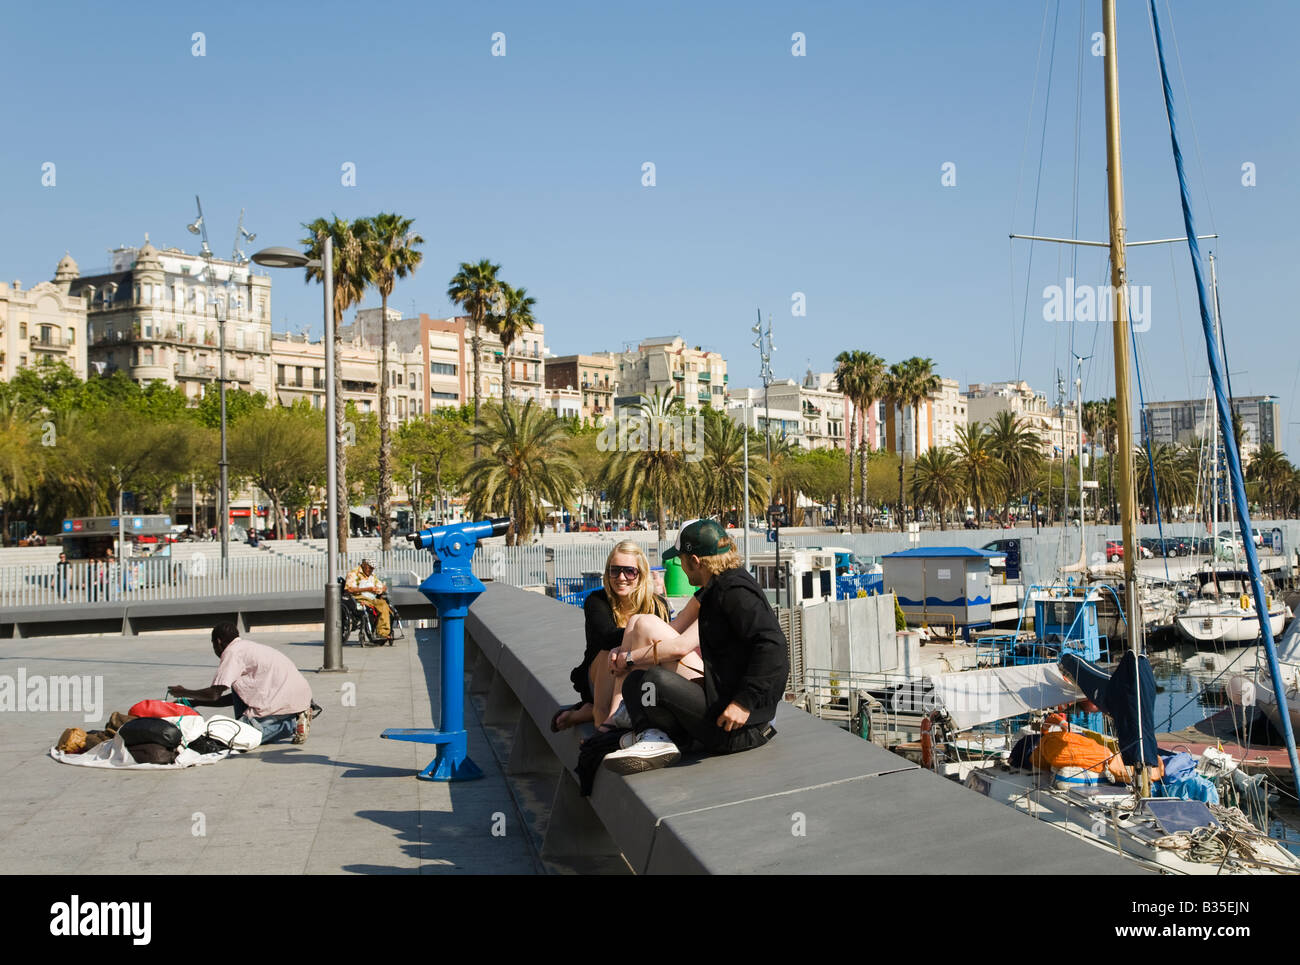 Spanien Barcelona junge Paar Sit auf Betonwand Segelboote im Hafen von Marina Port Vell Straße Verkäufer verteilt waren auf Bürgersteig Stockfoto